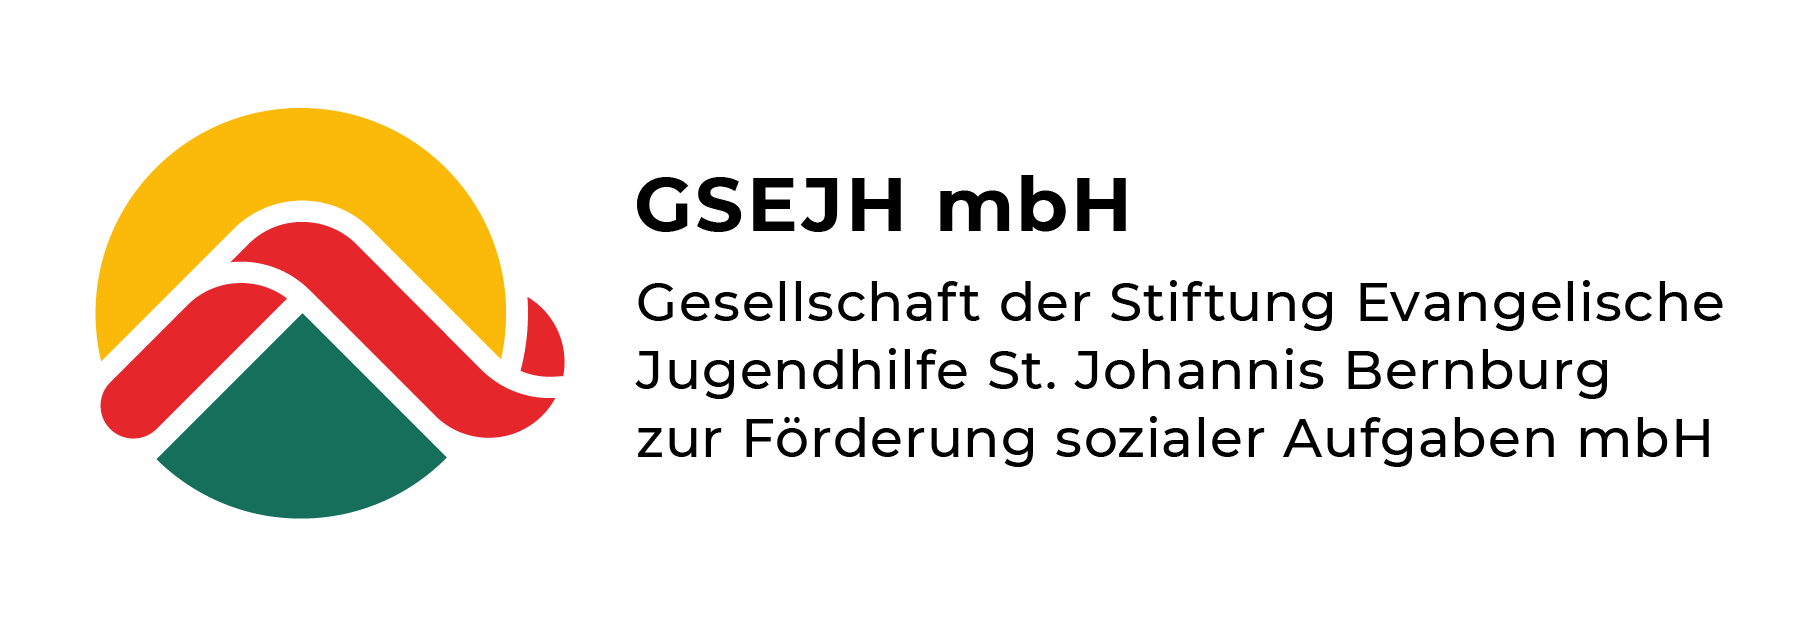 Stiftung Evangelische Jugendhilfe St. Johannis Bernburg